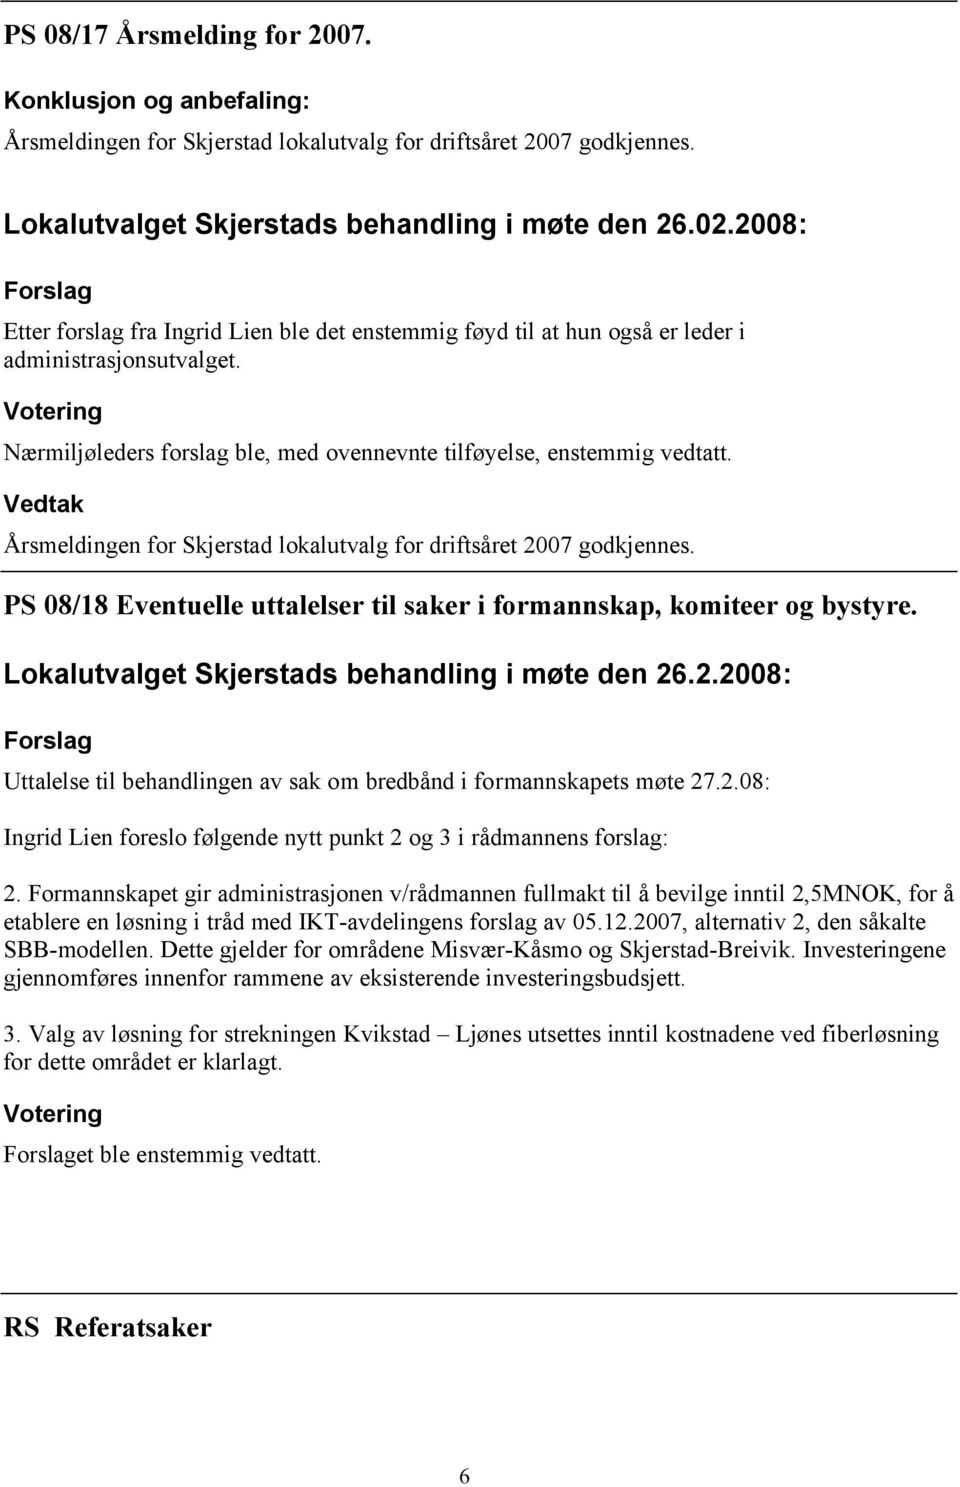 Årsmeldingen for Skjerstad lokalutvalg for driftsåret 2007 godkjennes. PS 08/18 Eventuelle uttalelser til saker i formannskap, komiteer og bystyre.